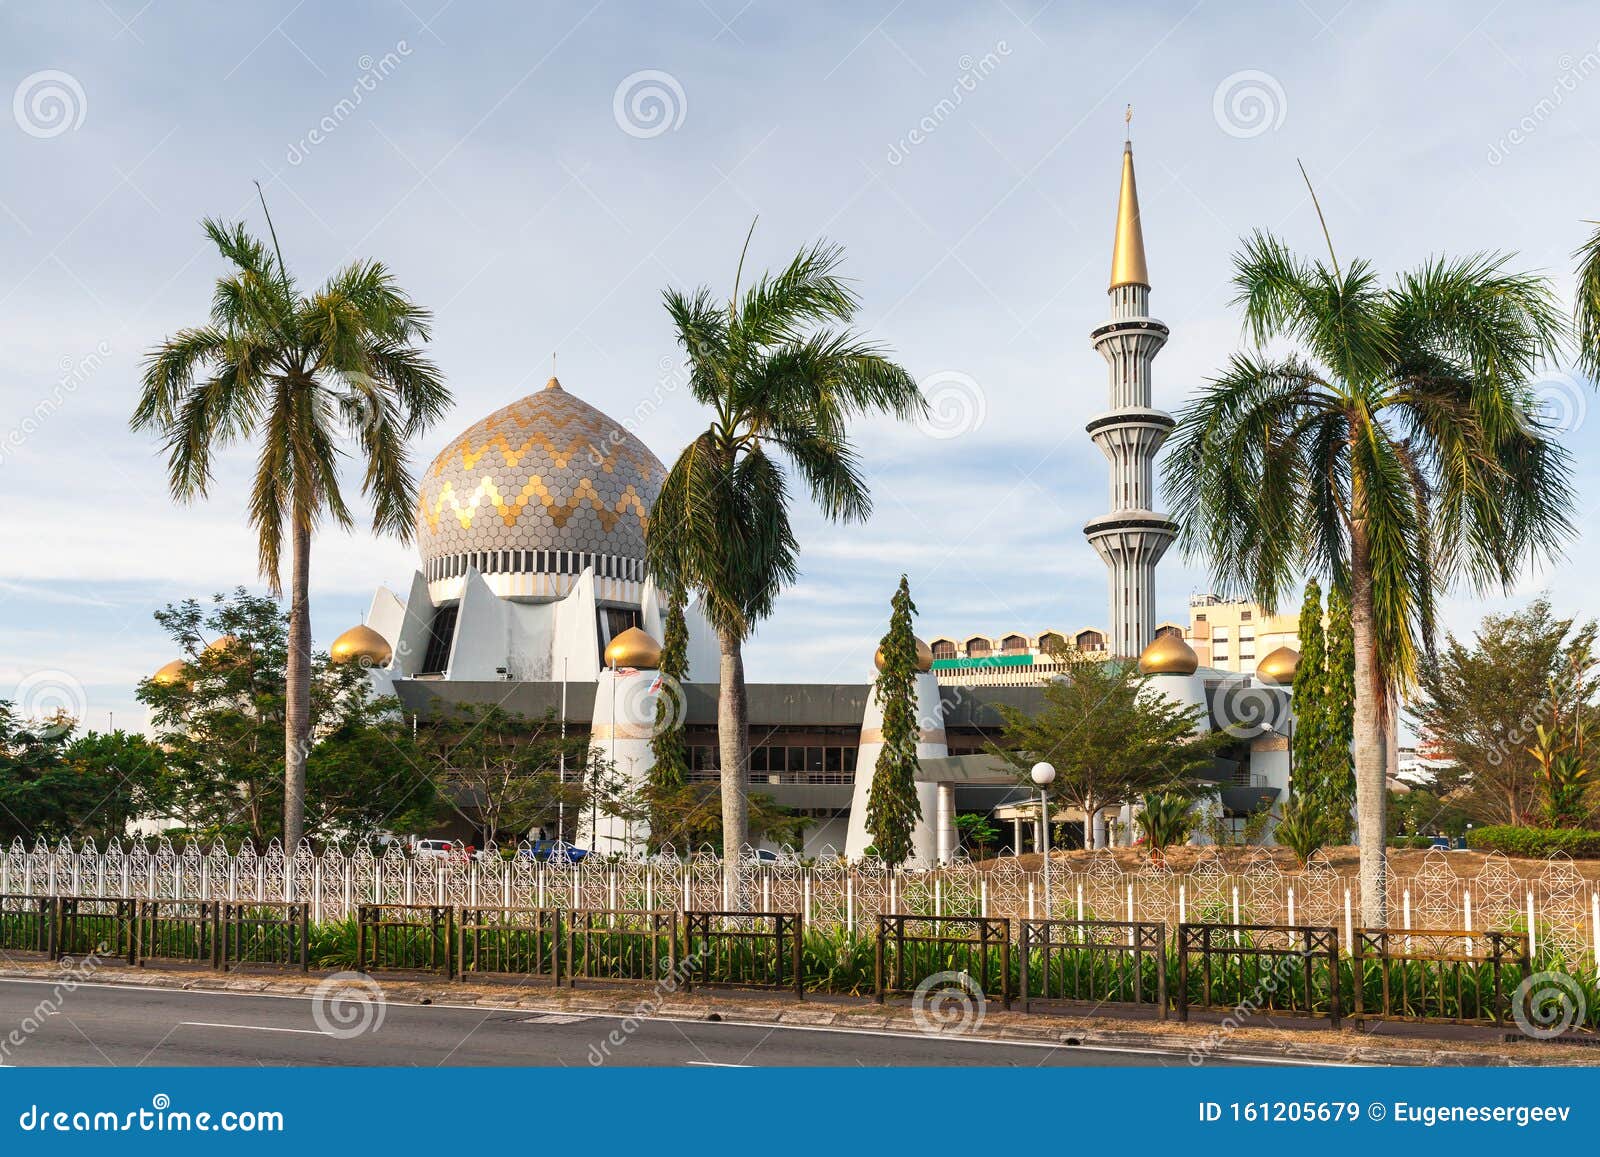 Sabah State Moschee Oder Masjid Negeri Sabah Stockbild - Bild von